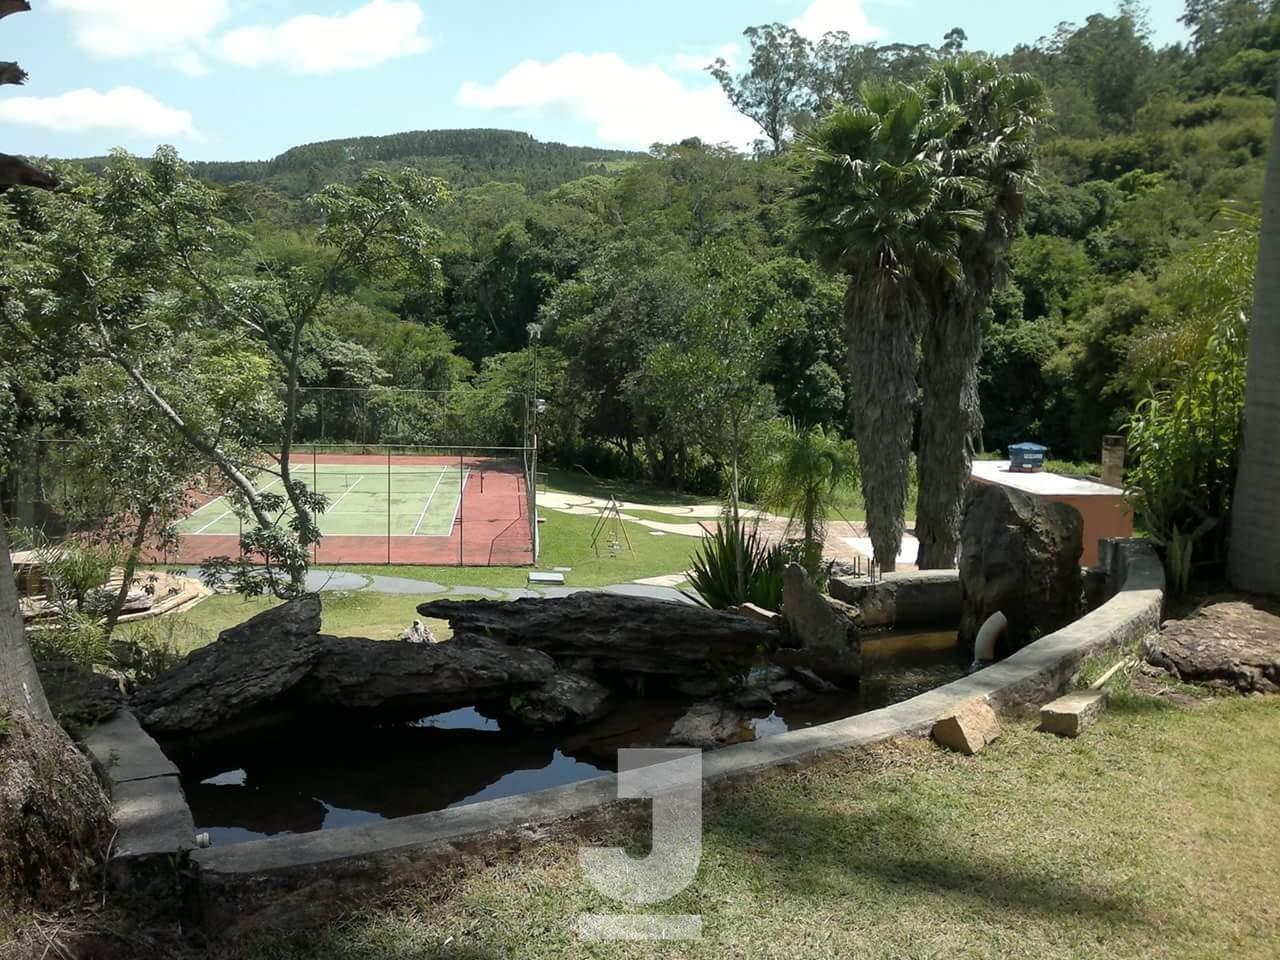 Terreno à venda por 140.000,00 no bairro Condomínio Jardim das Paineiras, em Itatiba.: 